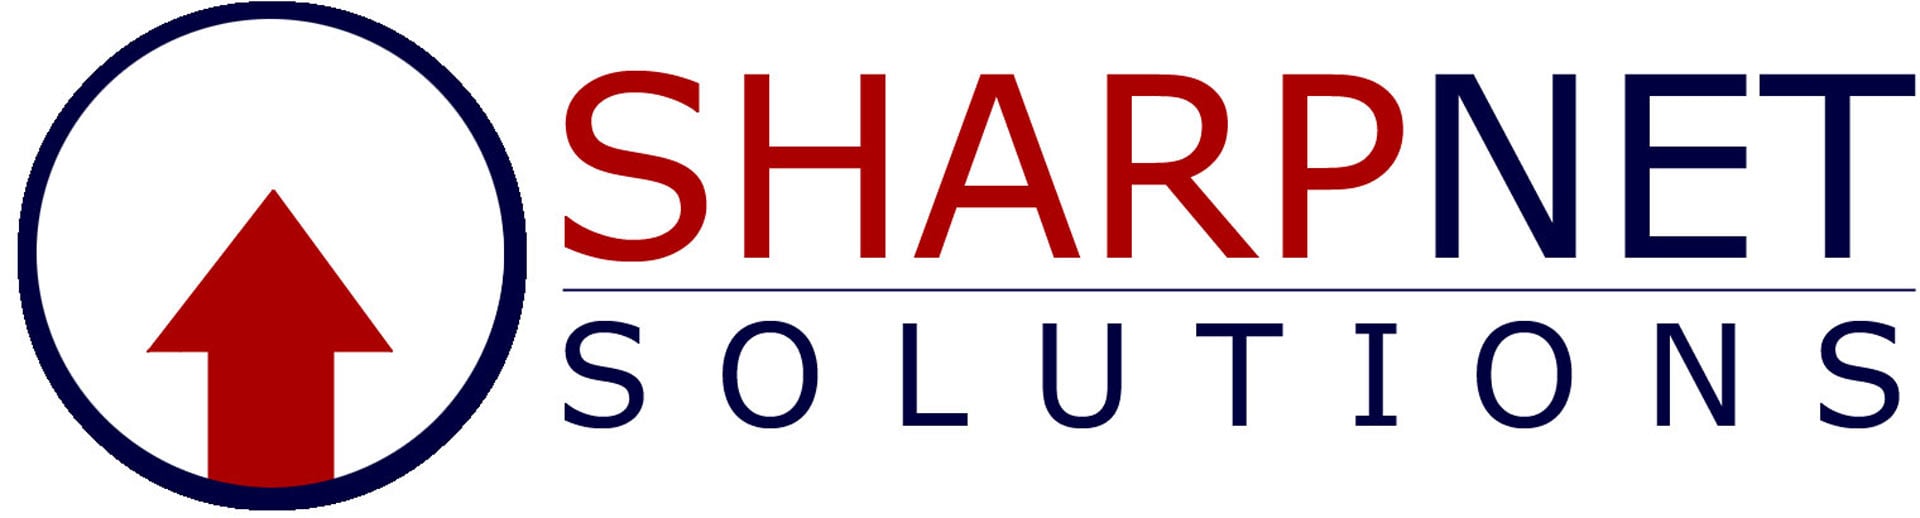 Best Social Media Marketing Firm Logo: SharpNet